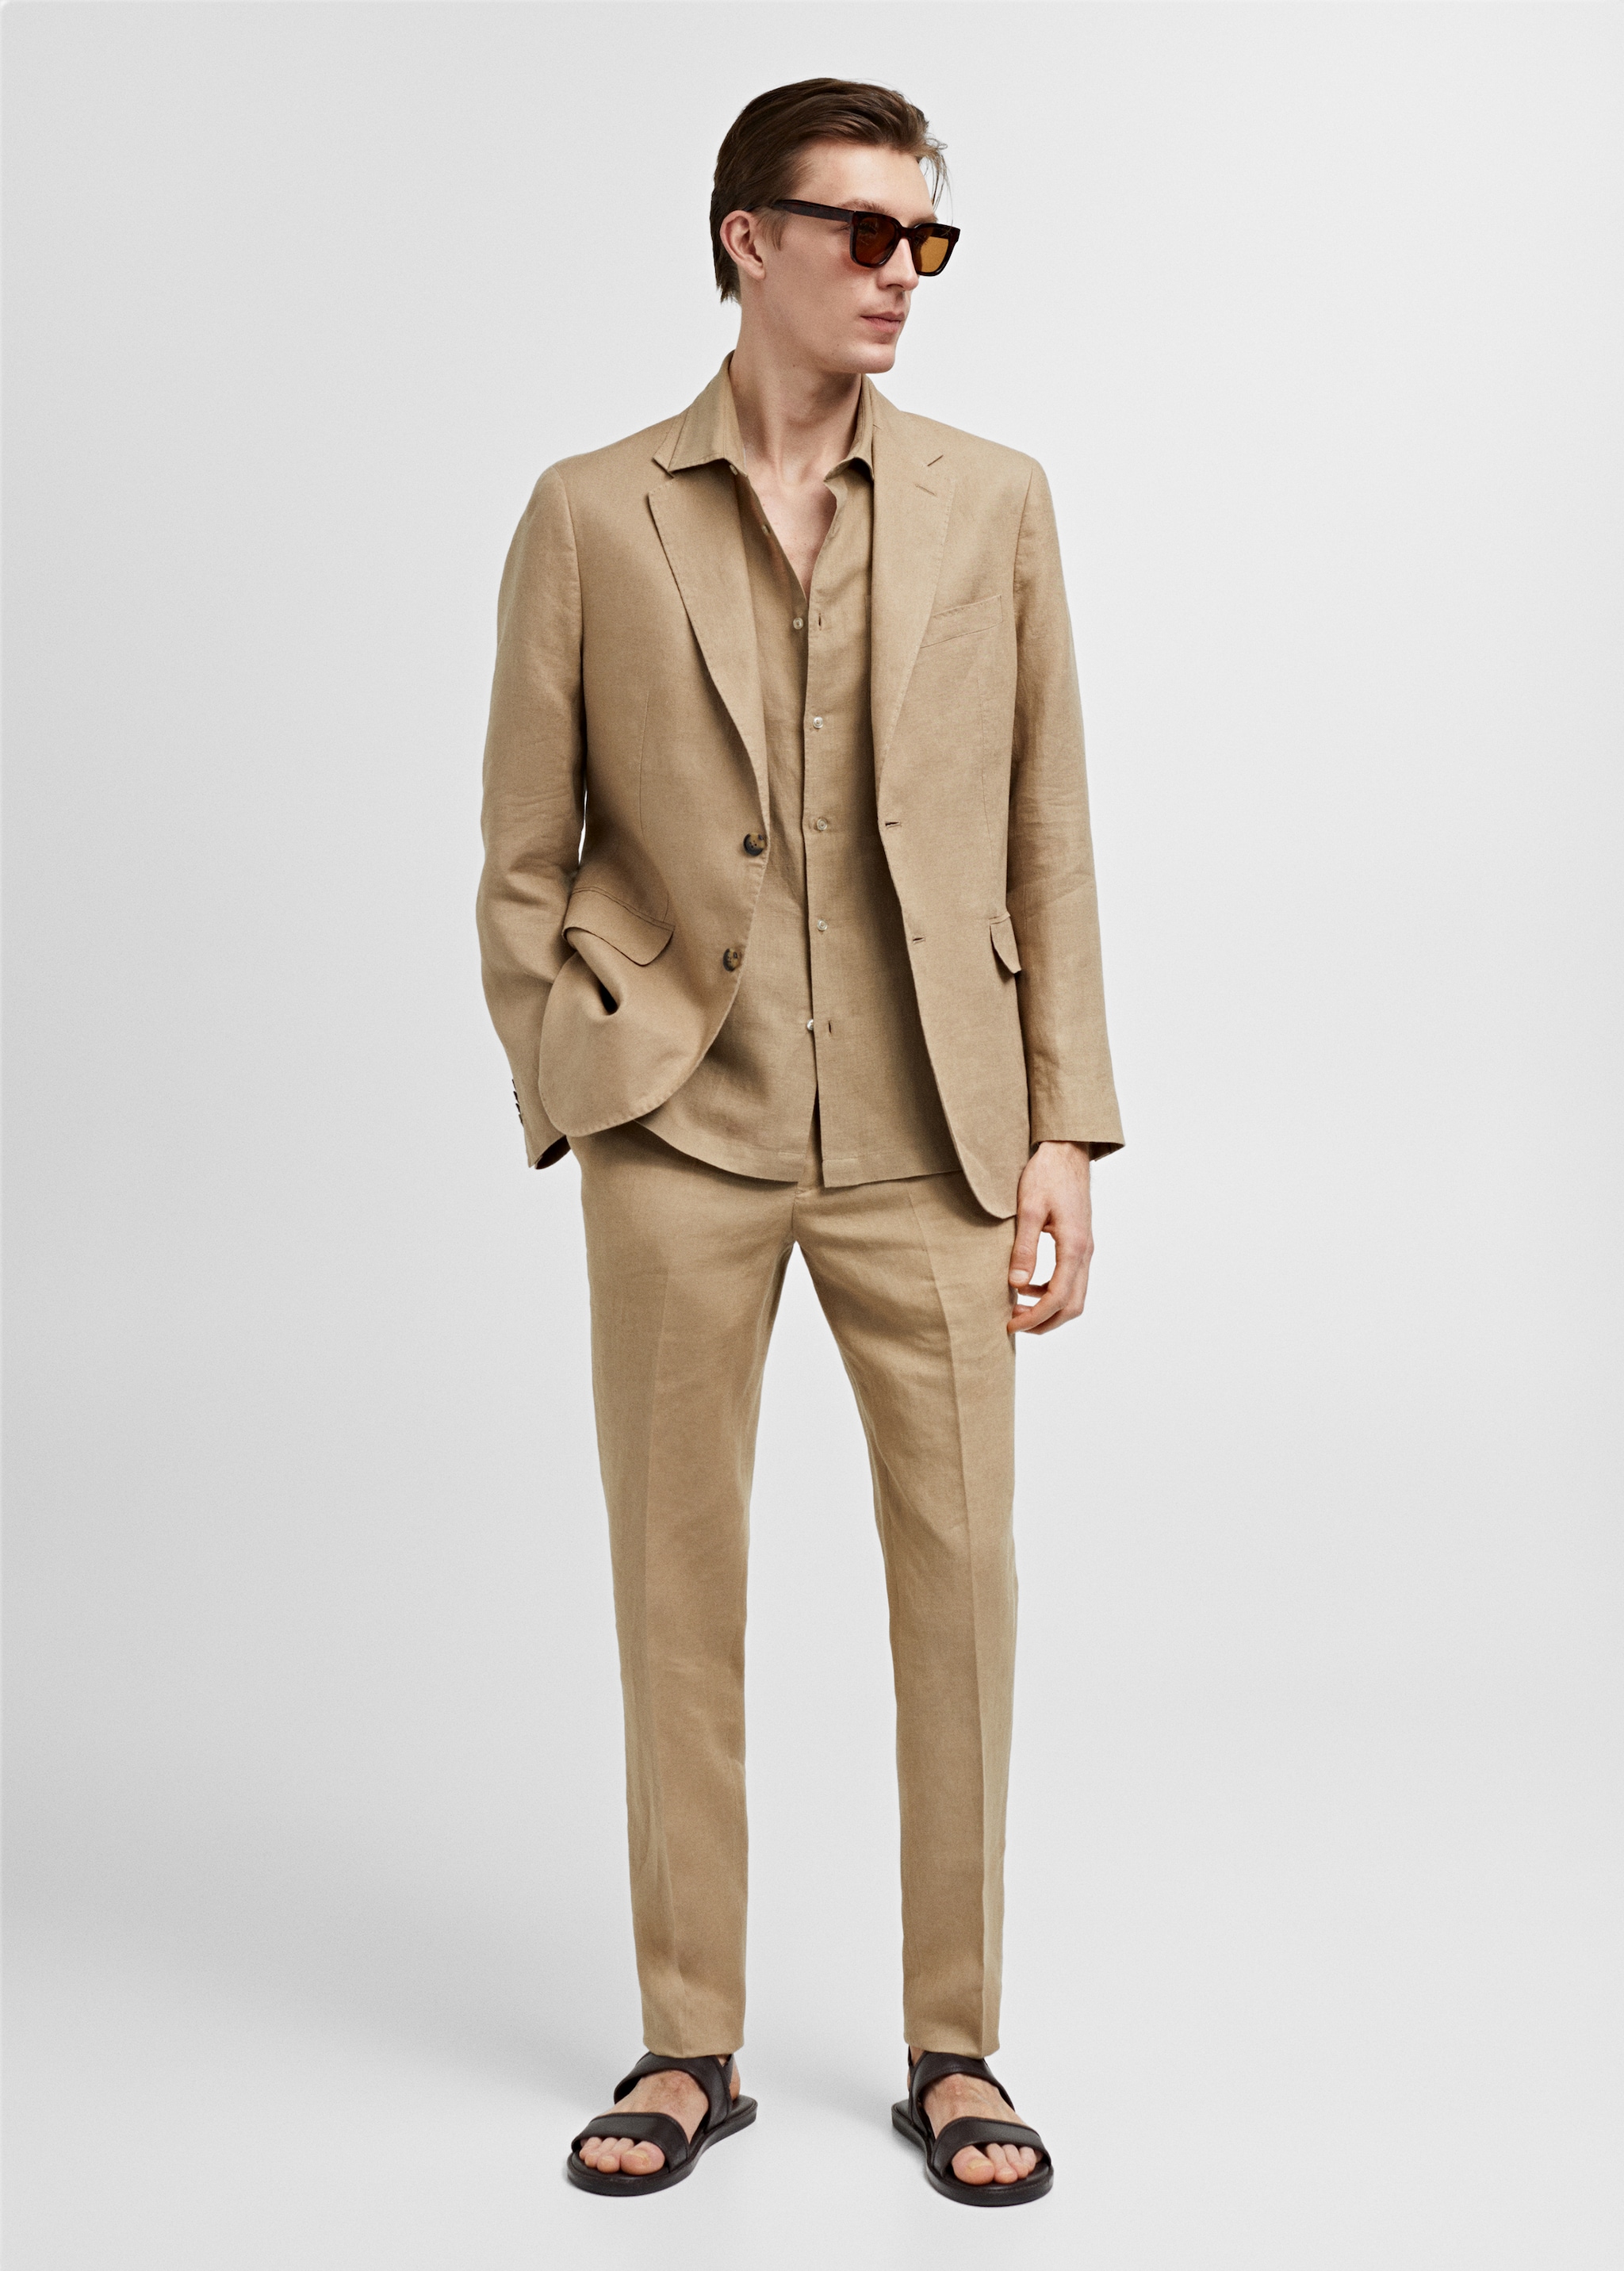 100% linen slim-fit suit jacket - General plane